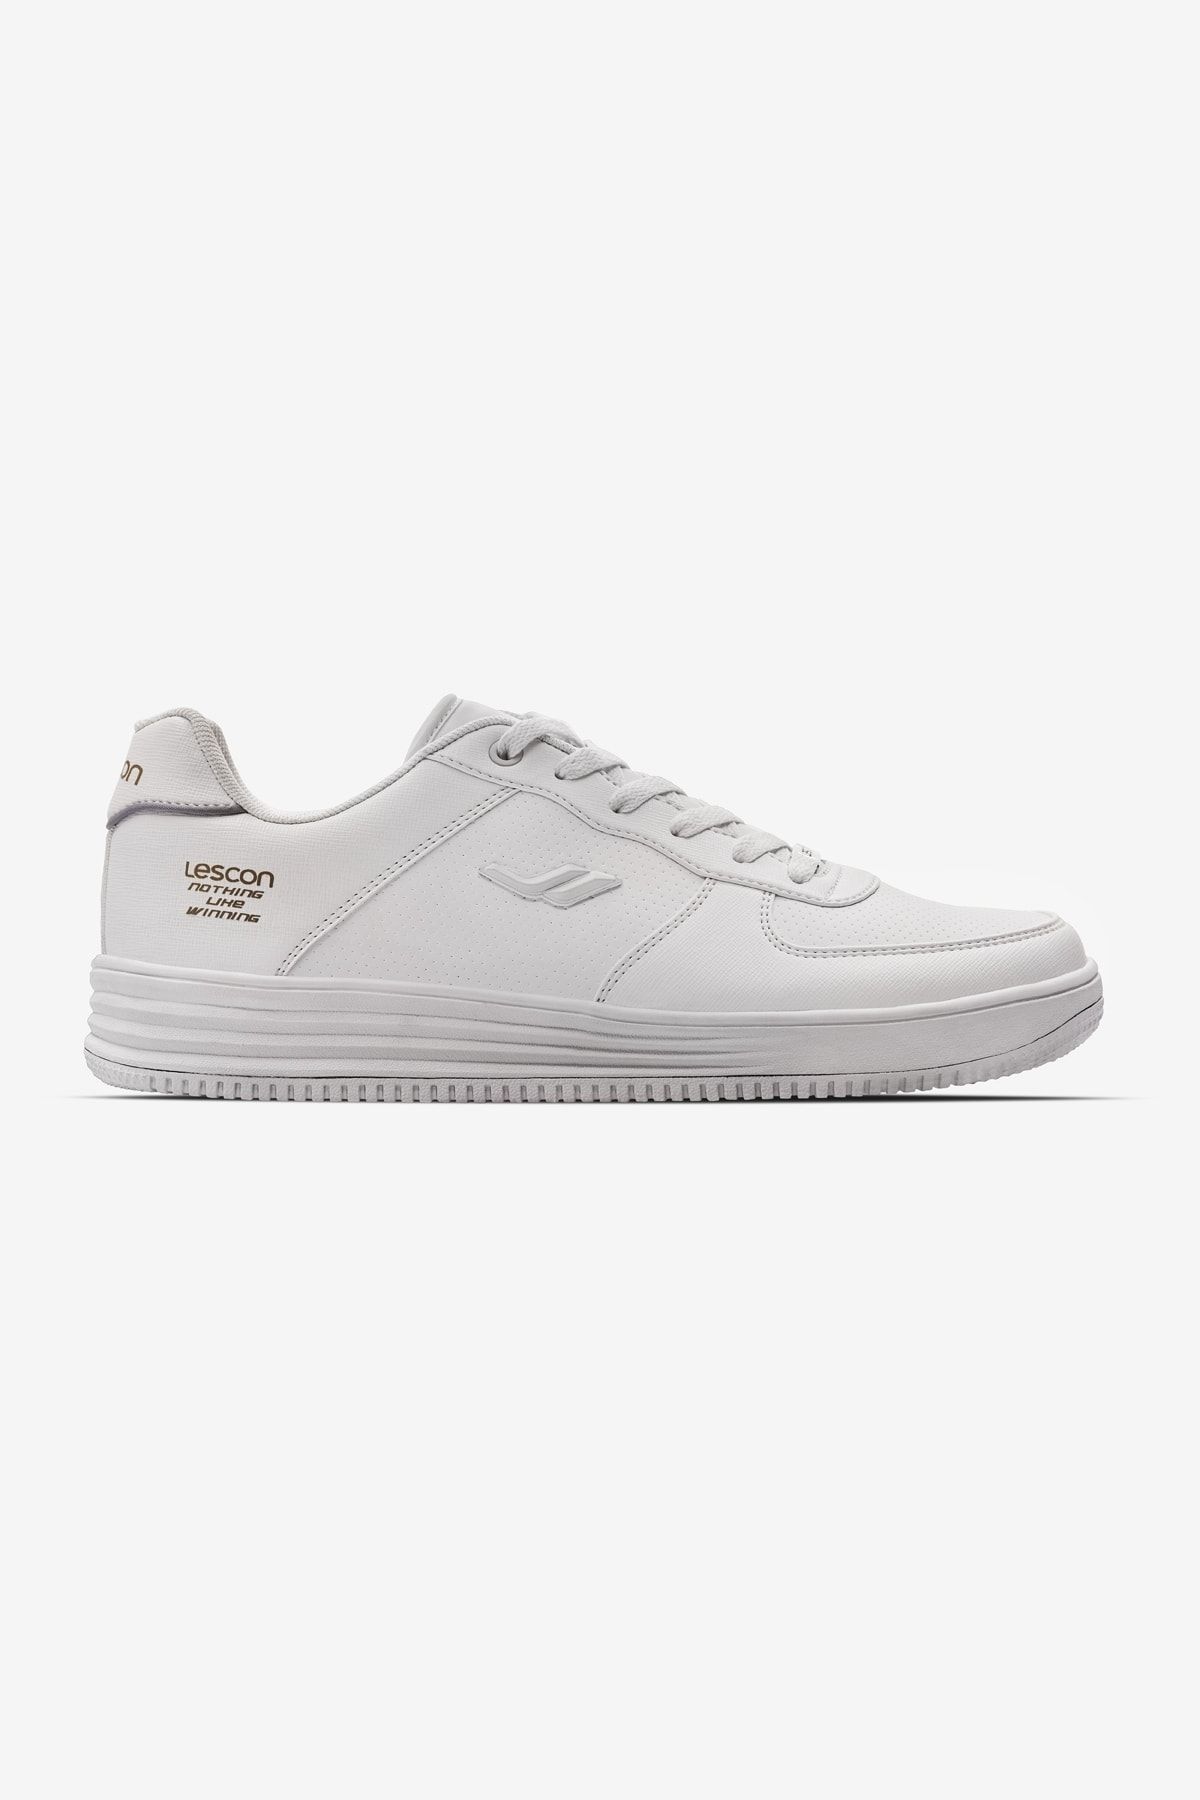 Lescon Zeplın Beyaz Sneaker Ayakkabı